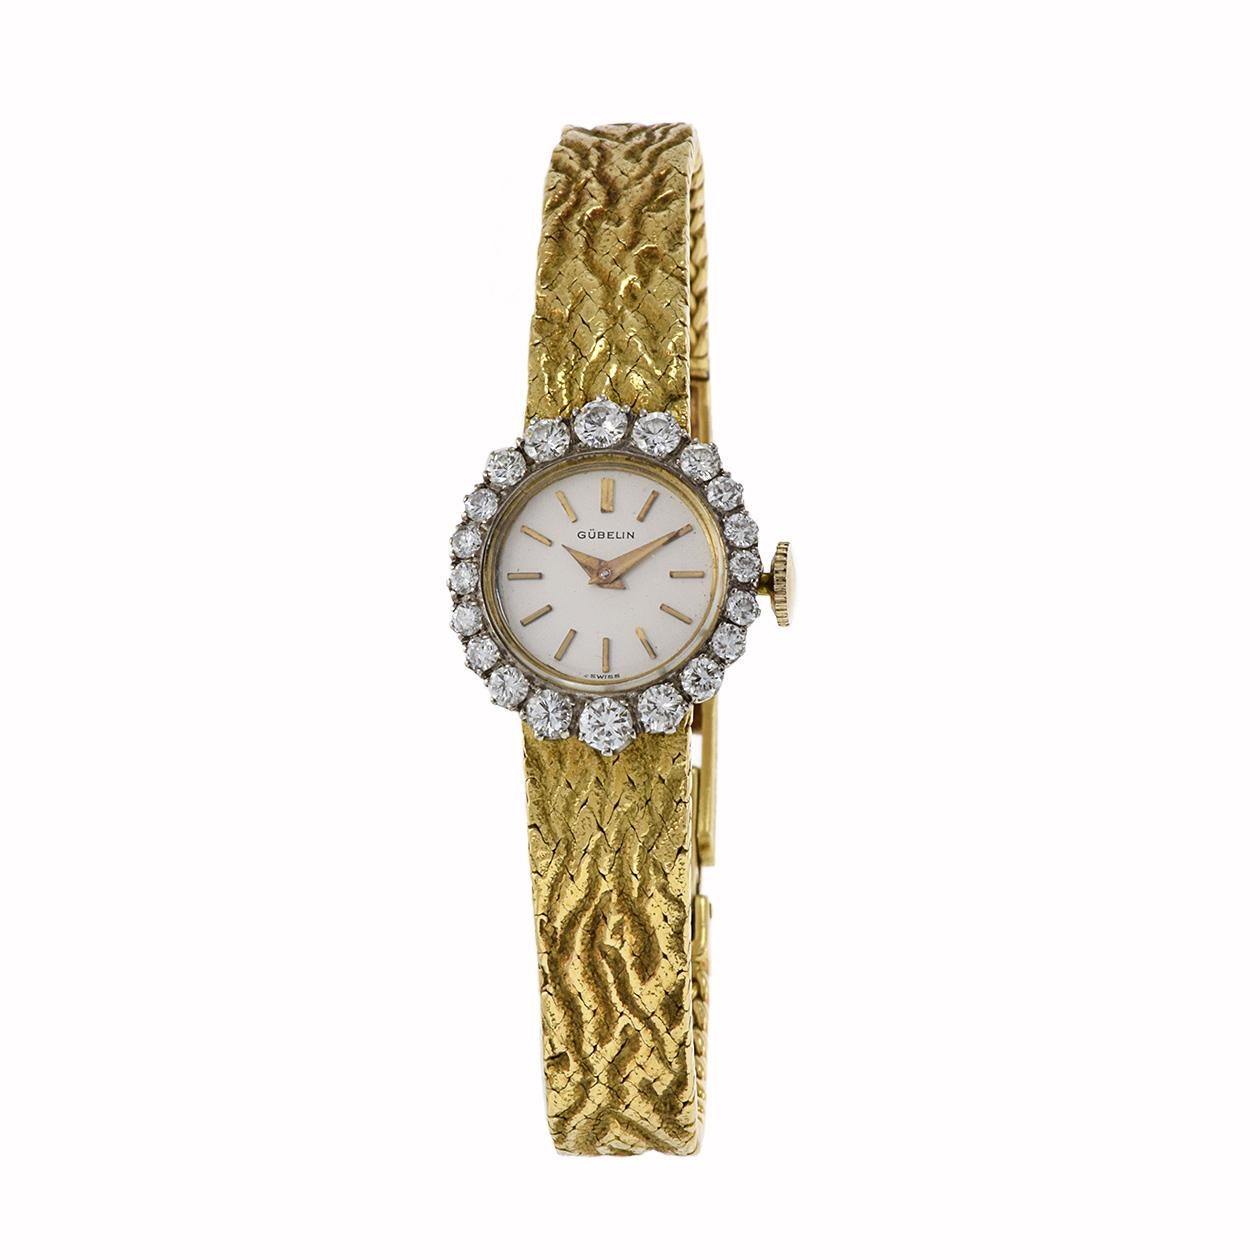 Die bezaubernde Gubelin 1960's Diamond Bezel Bracelet Watch ist eine atemberaubende Verkörperung von Luxus und Raffinesse. Der mit viel Liebe zum Detail gefertigte Zeitmesser mit 19-mm-Gehäuse und -Armband aus 18-karätigem Gold strahlt mit jedem